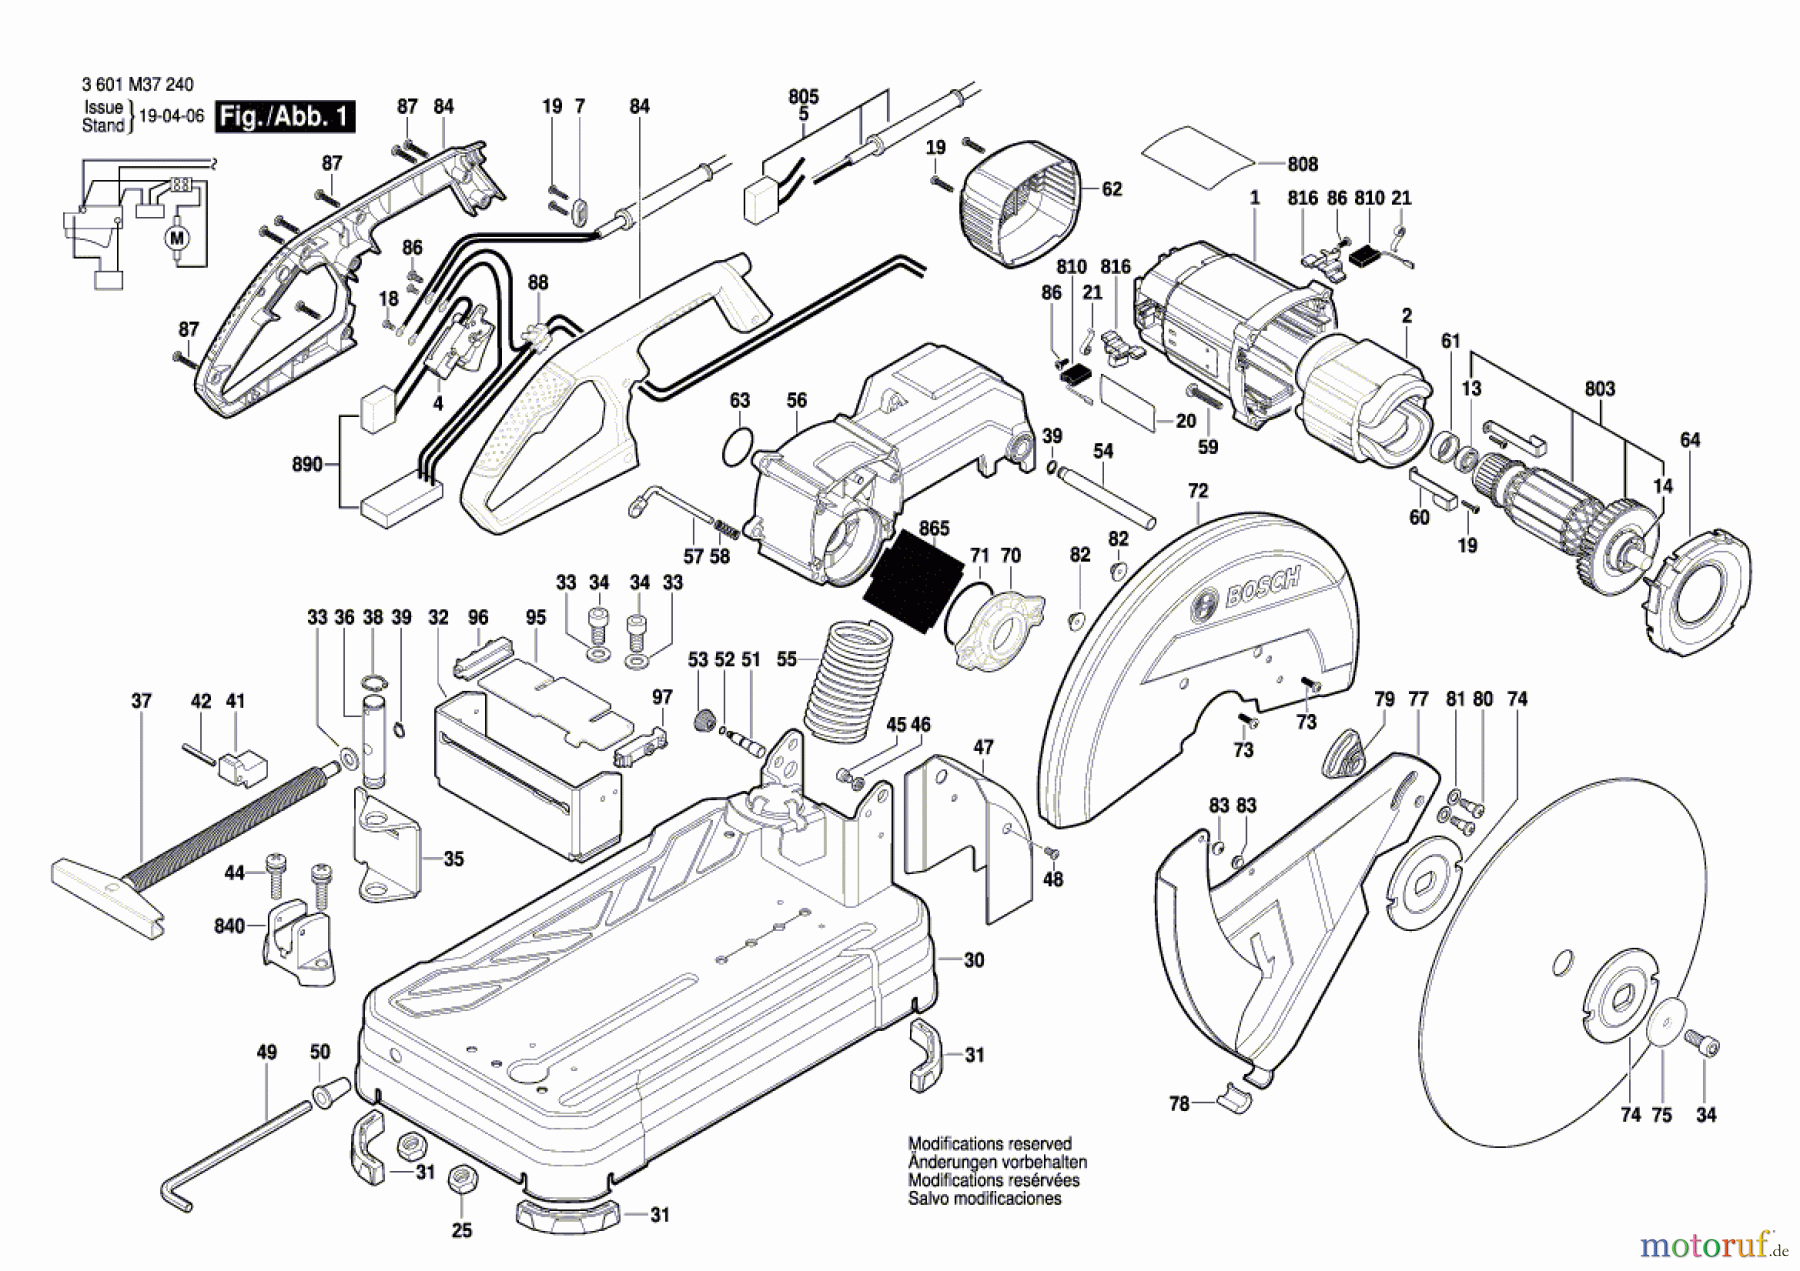  Bosch Werkzeug Trennschleifer GCO 14-24 J Seite 1